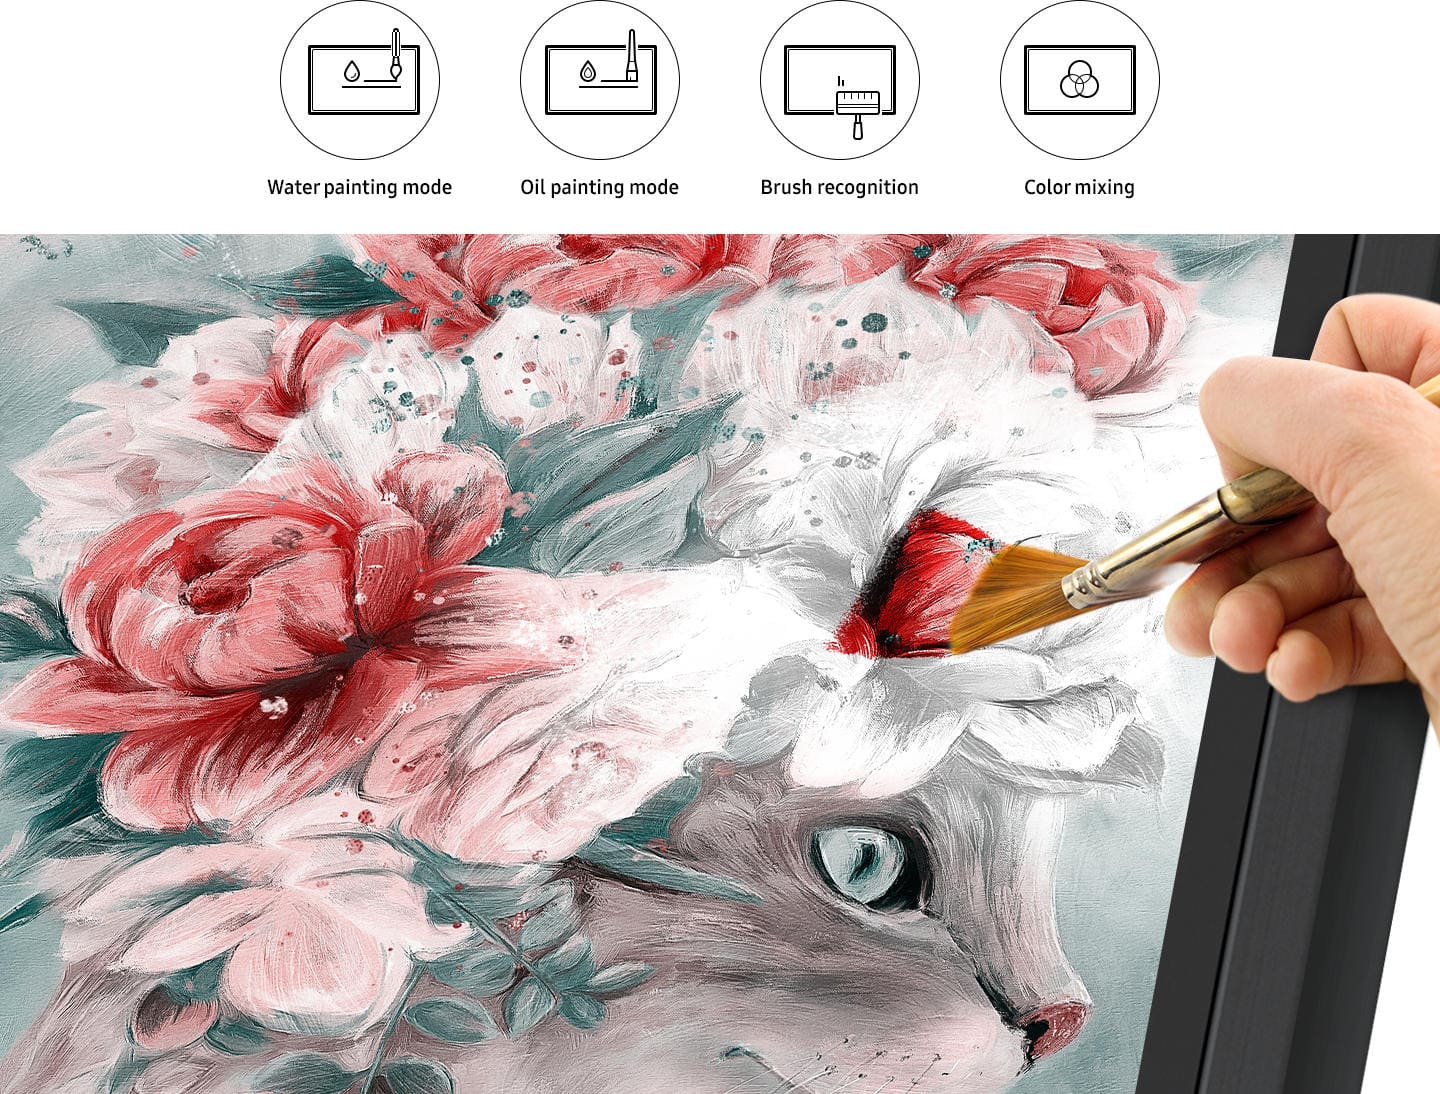 Malen Sie auf dem Samsung Flip WM75A mit echtem Pinsel auf dem Display malen